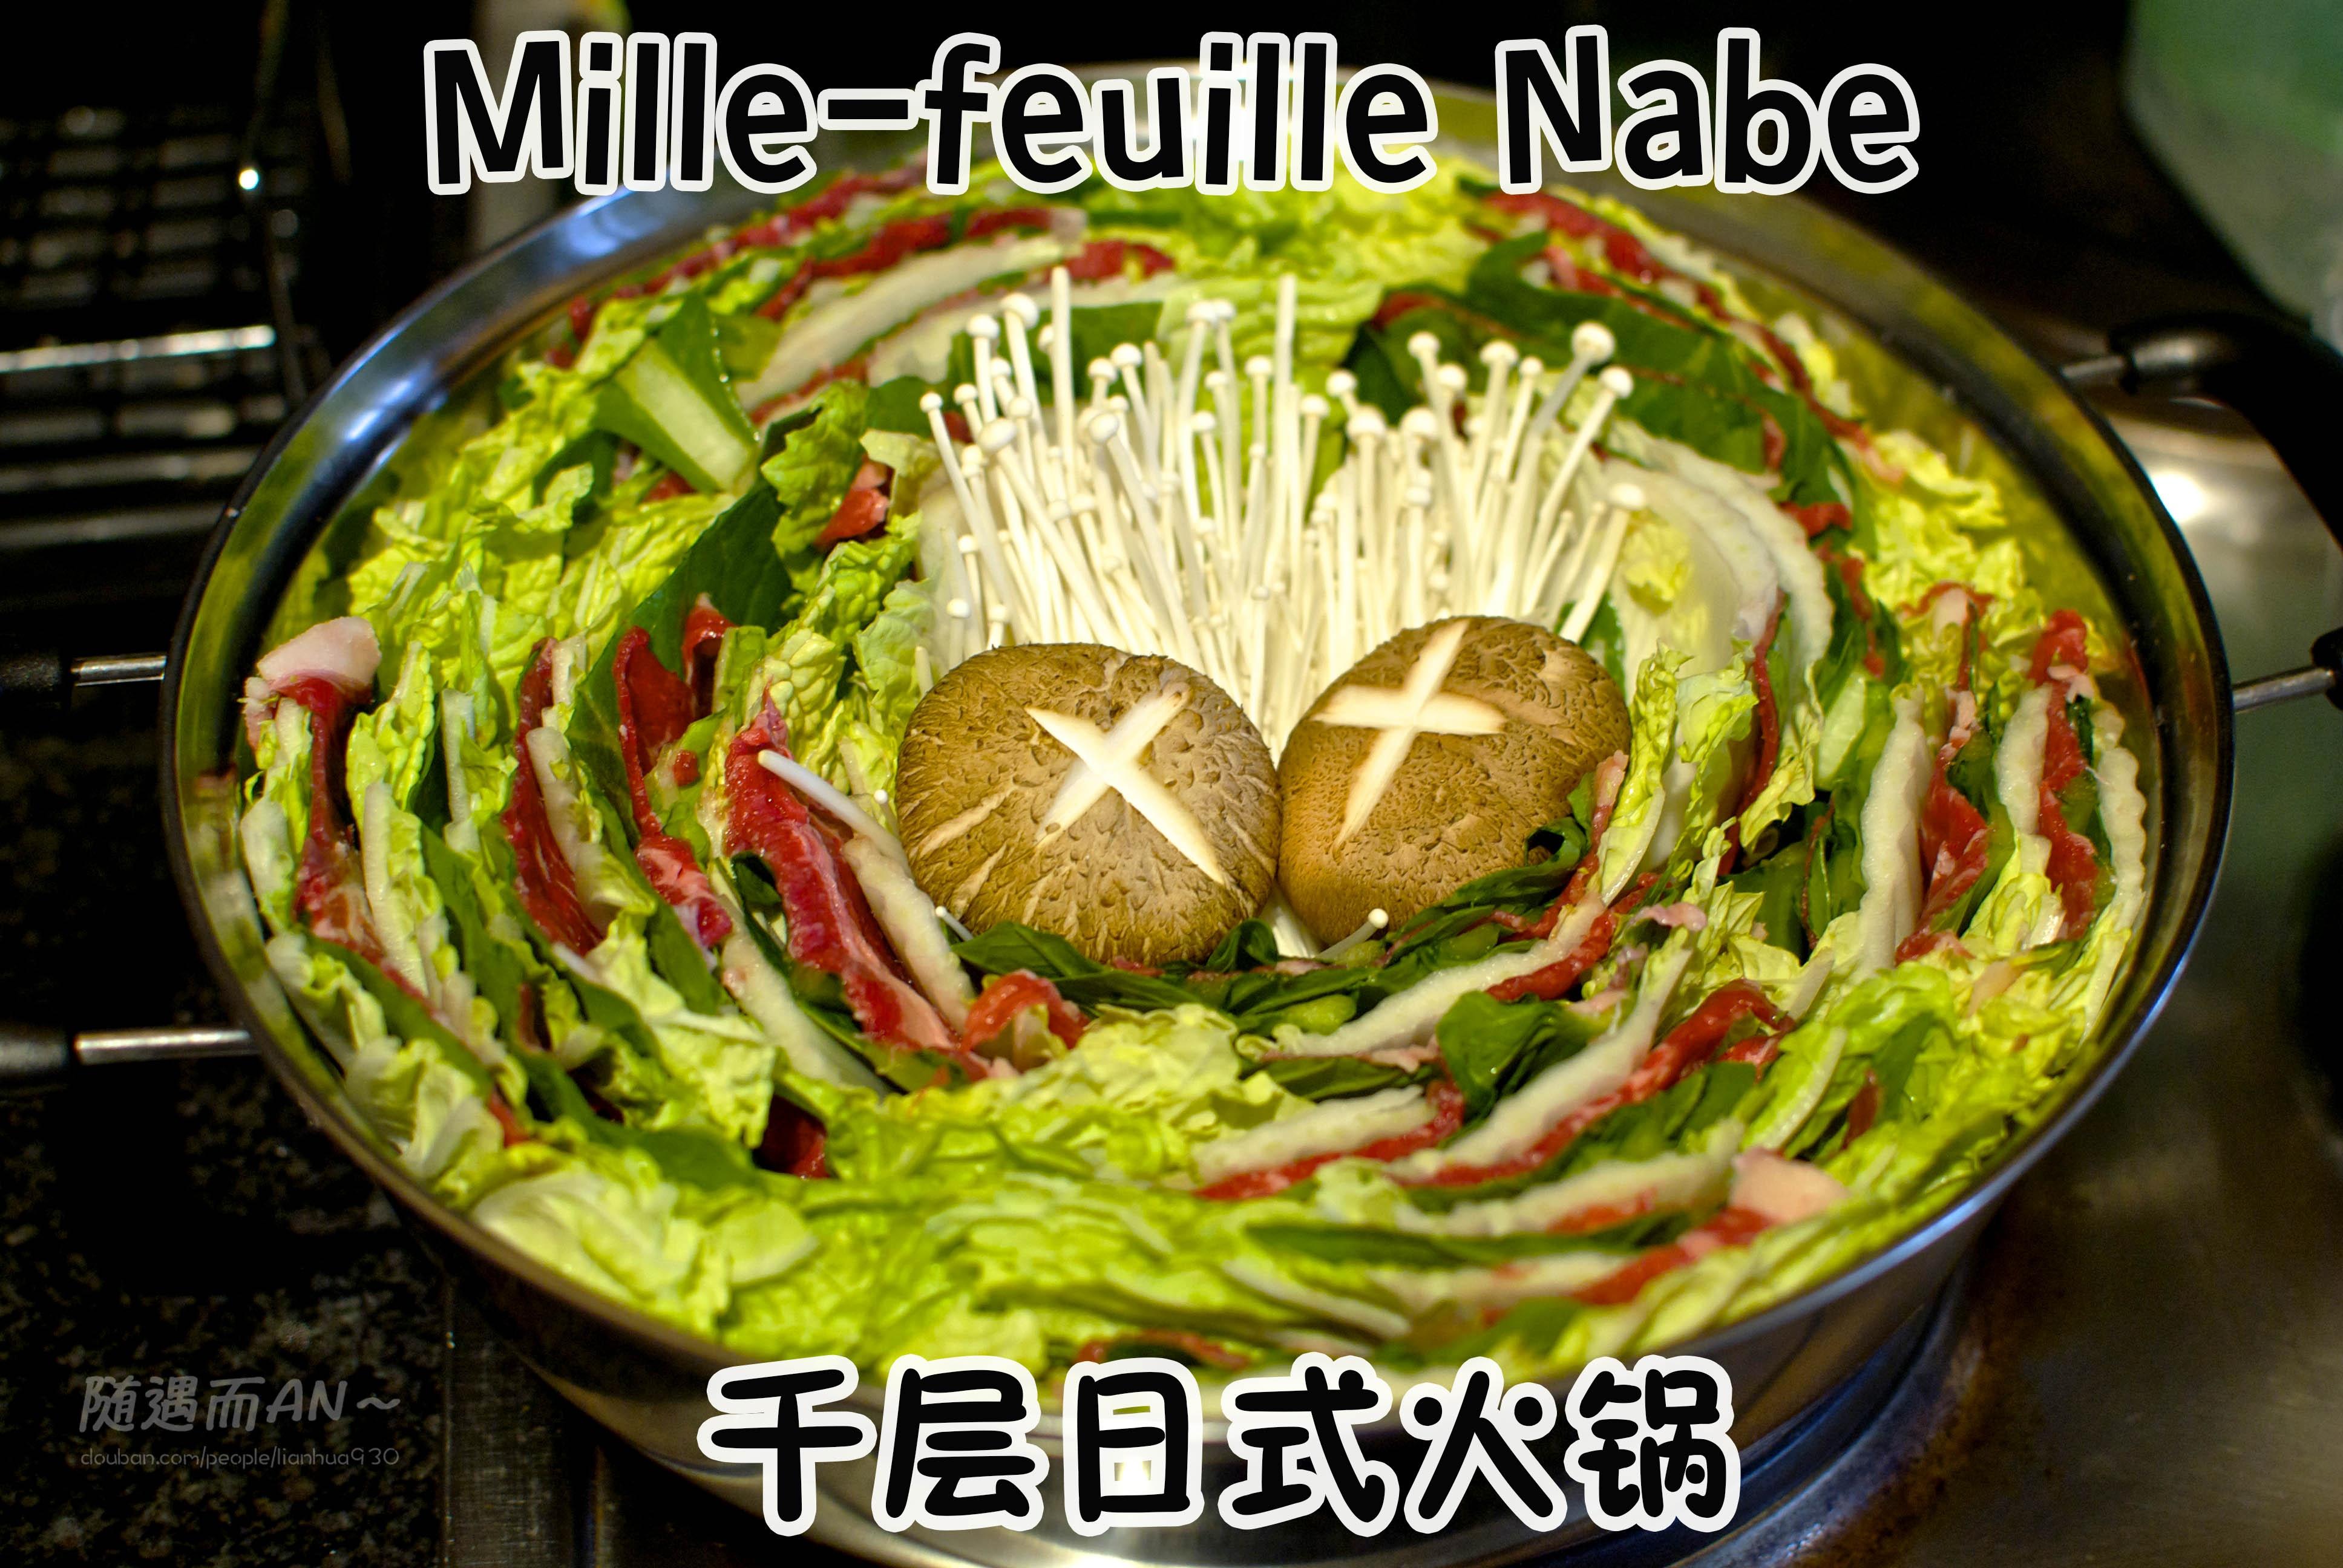 千层日式火锅－Mille-feuille Nabe